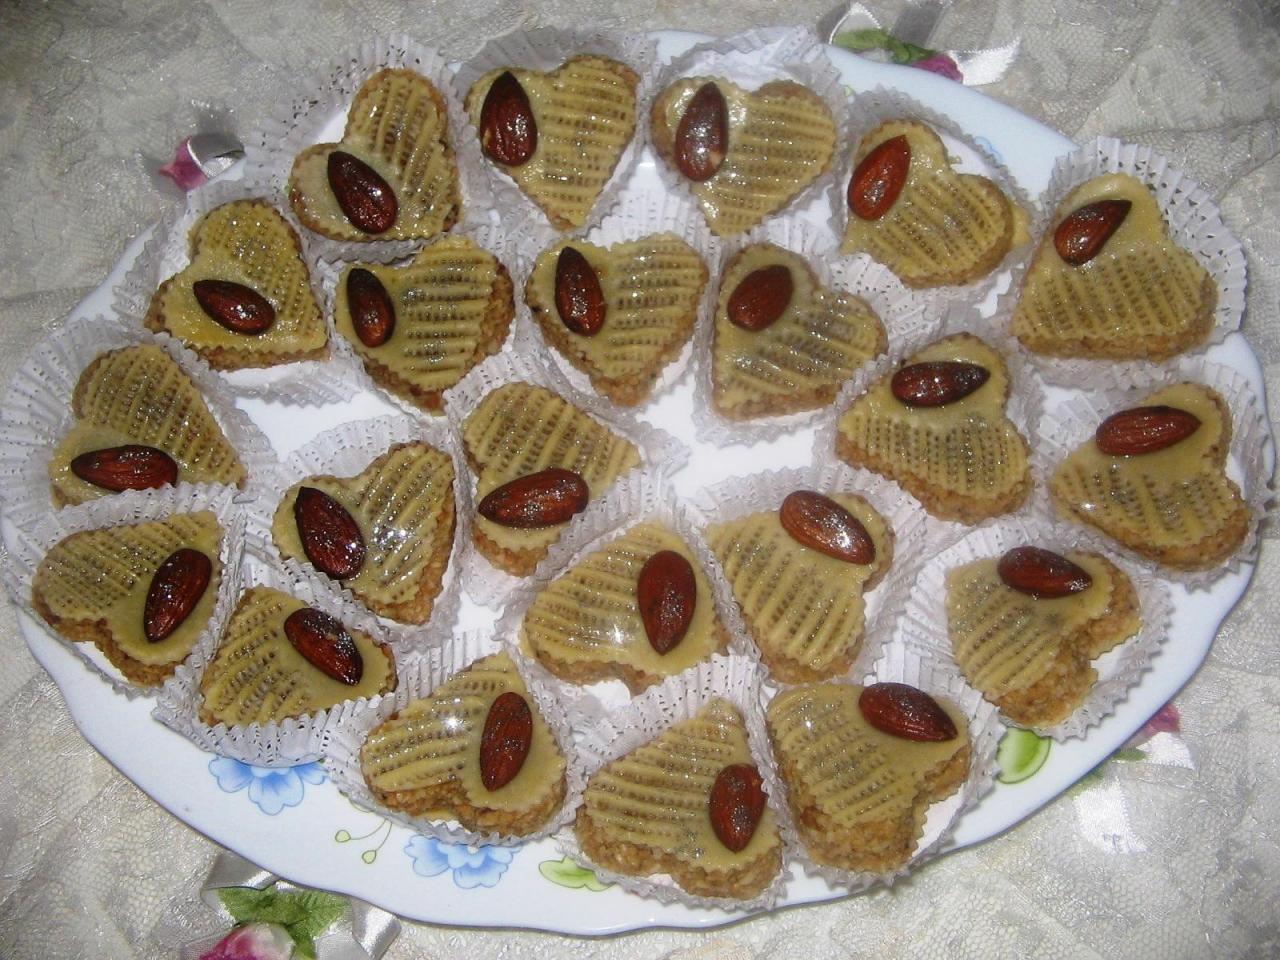 احلي اعملوا الجزائريه الحلويات بالصور جزائريه حلويات